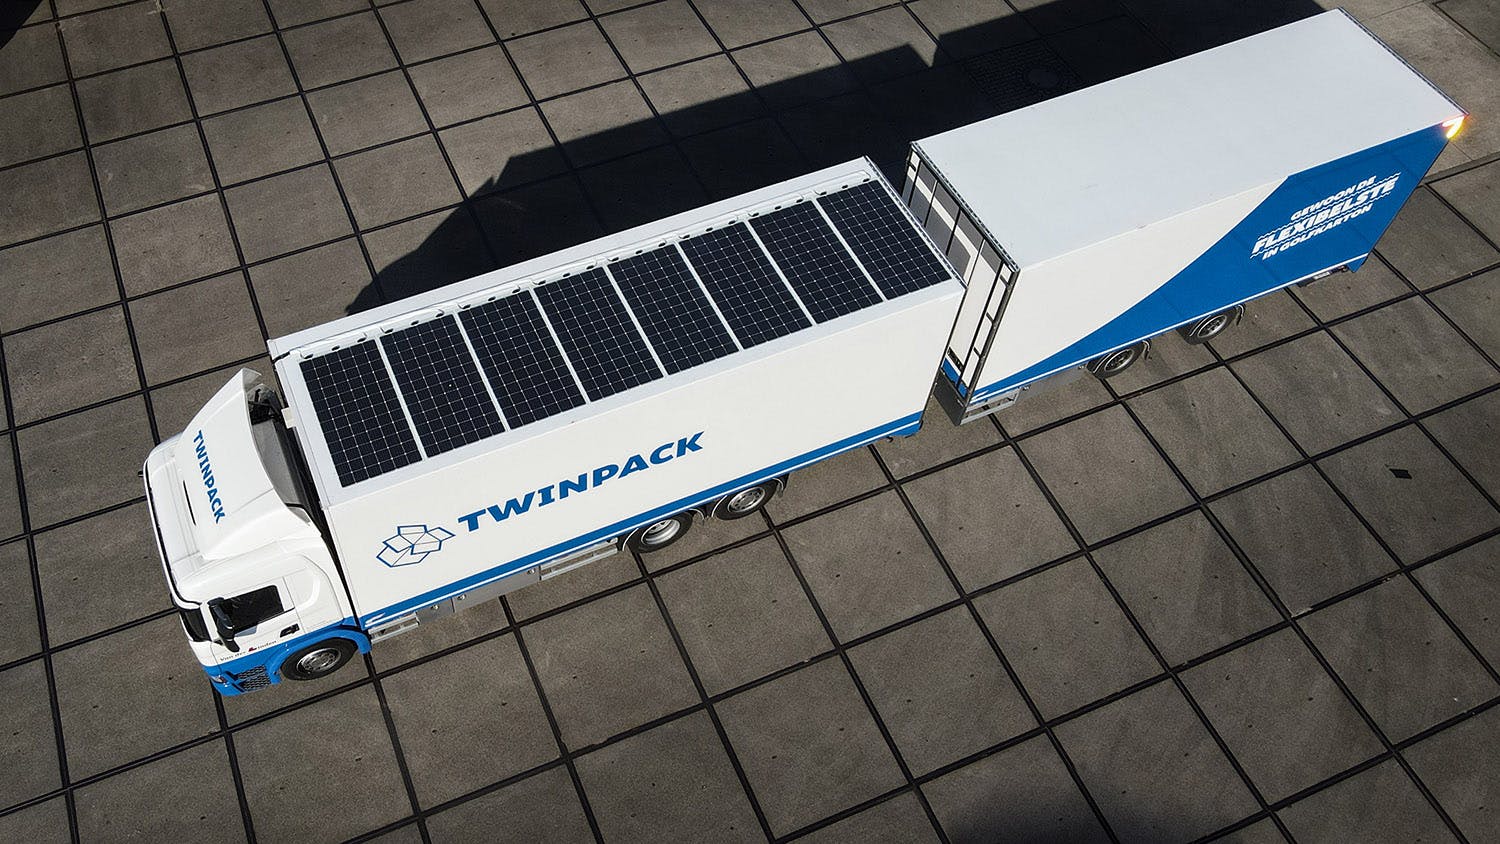 Van der Linden powers its trucks with solar energy